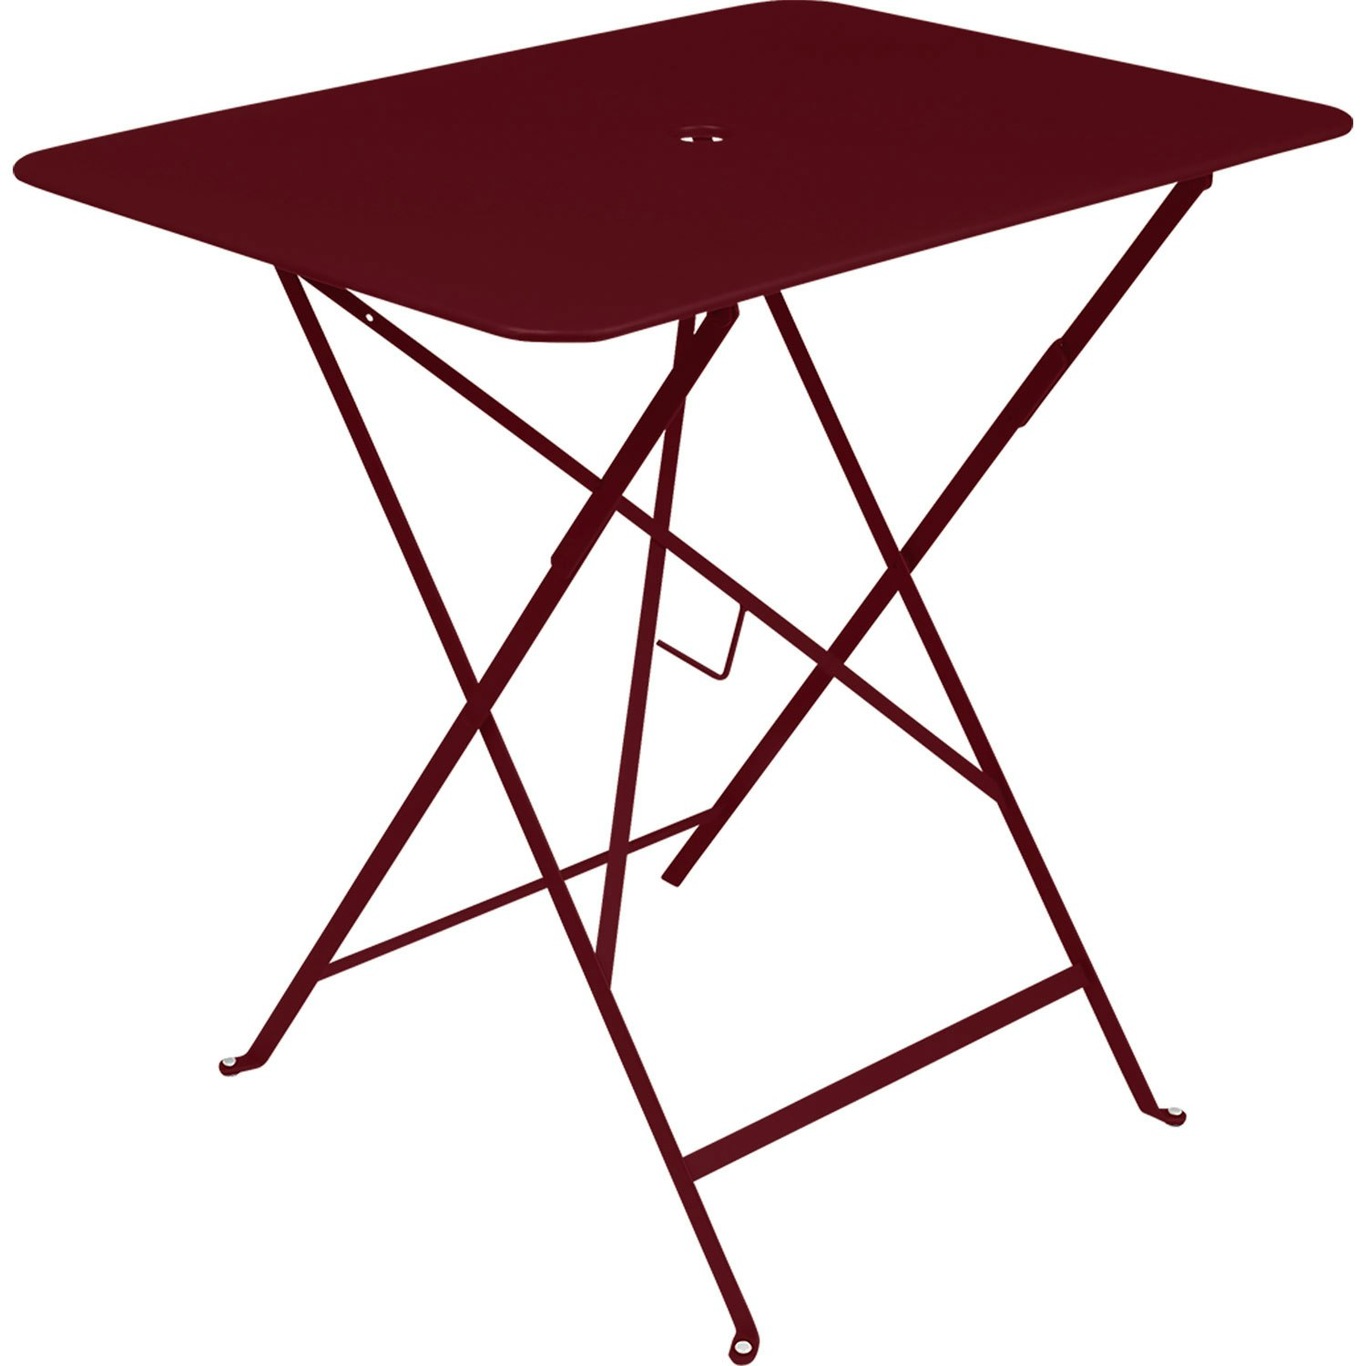 Bistro Table 77x57 cm Pöytä 57x77 cm, Black Cherry